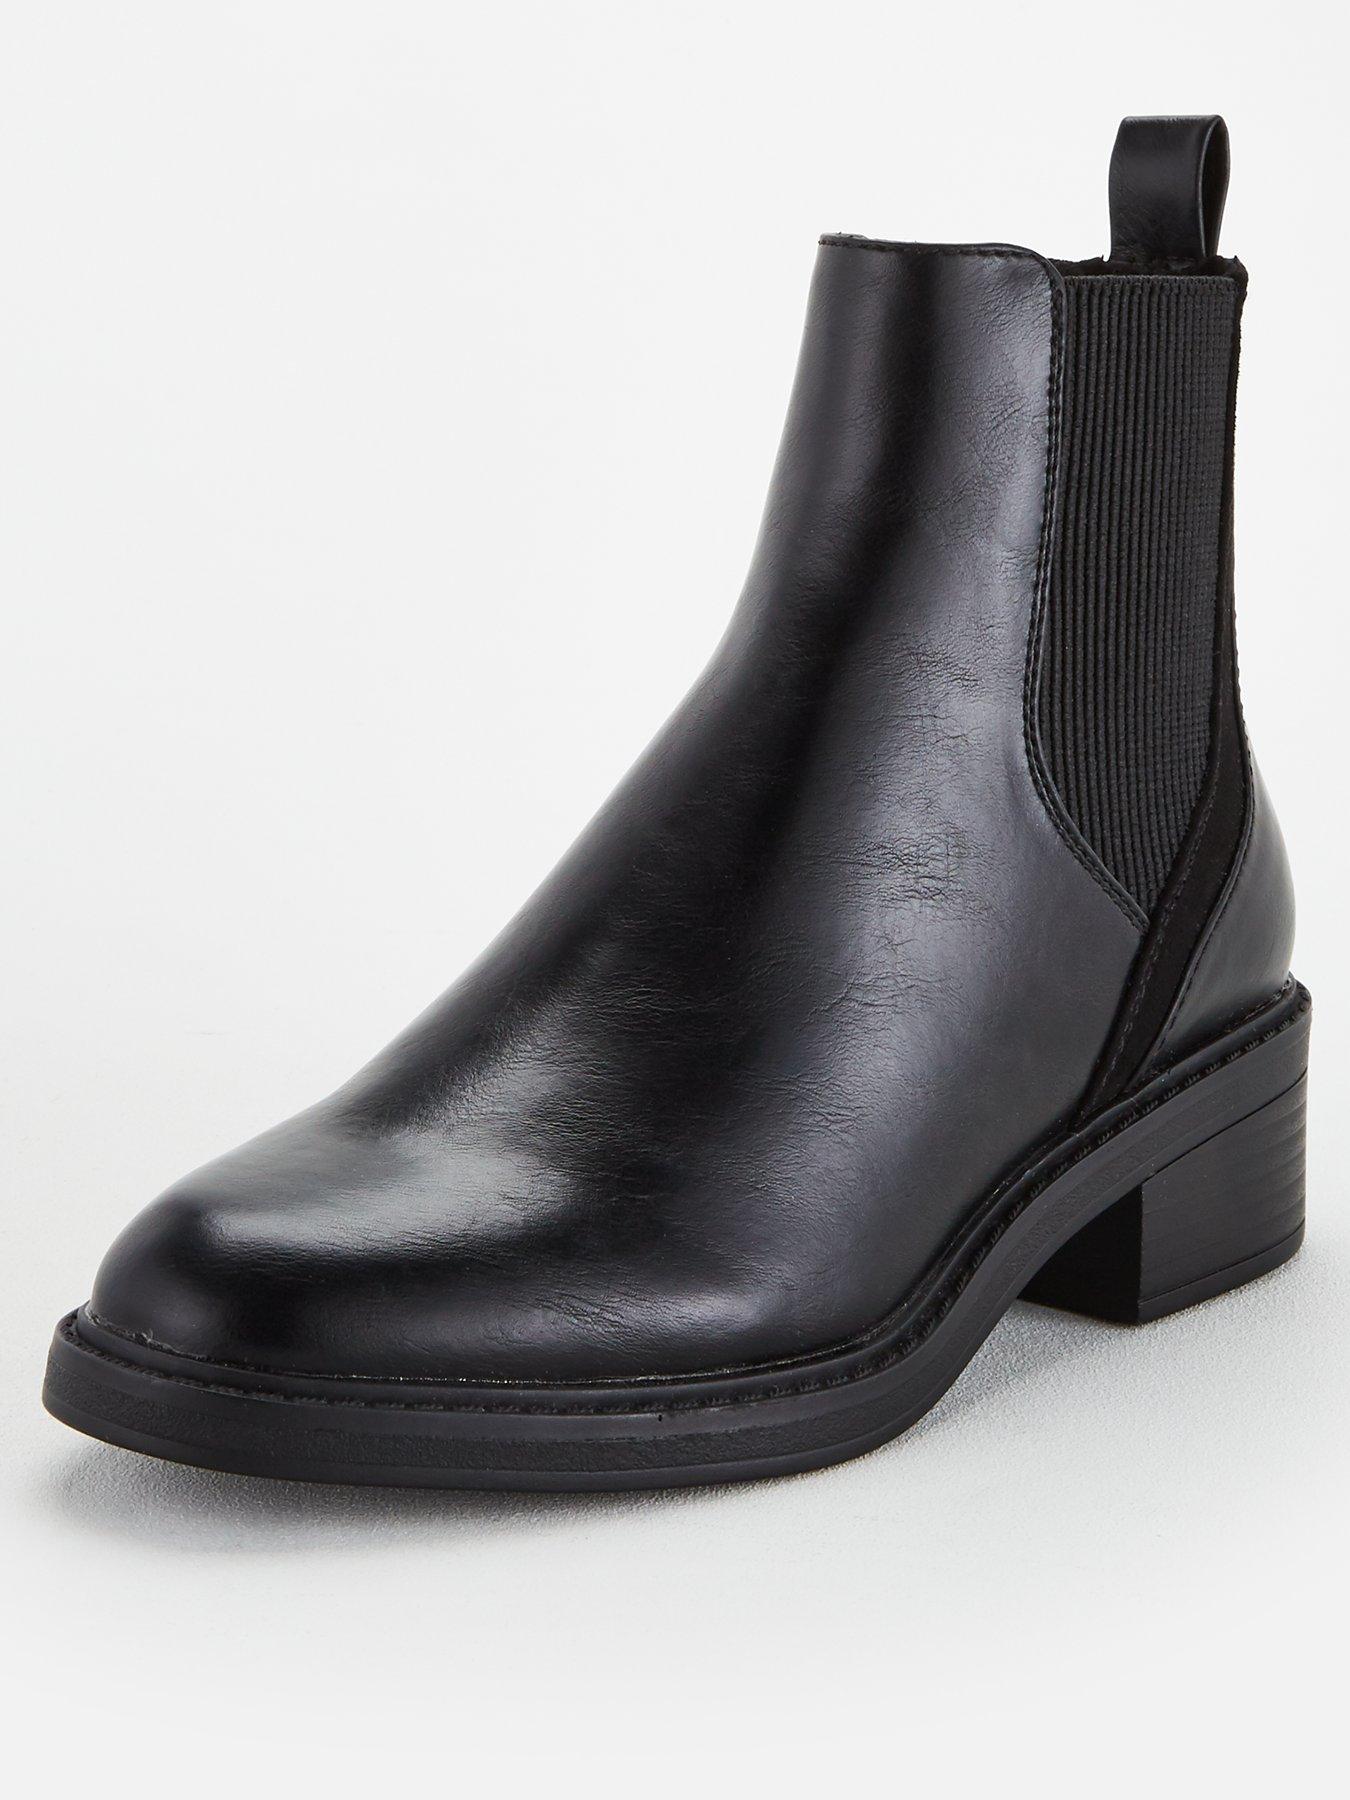 plain black boots ladies